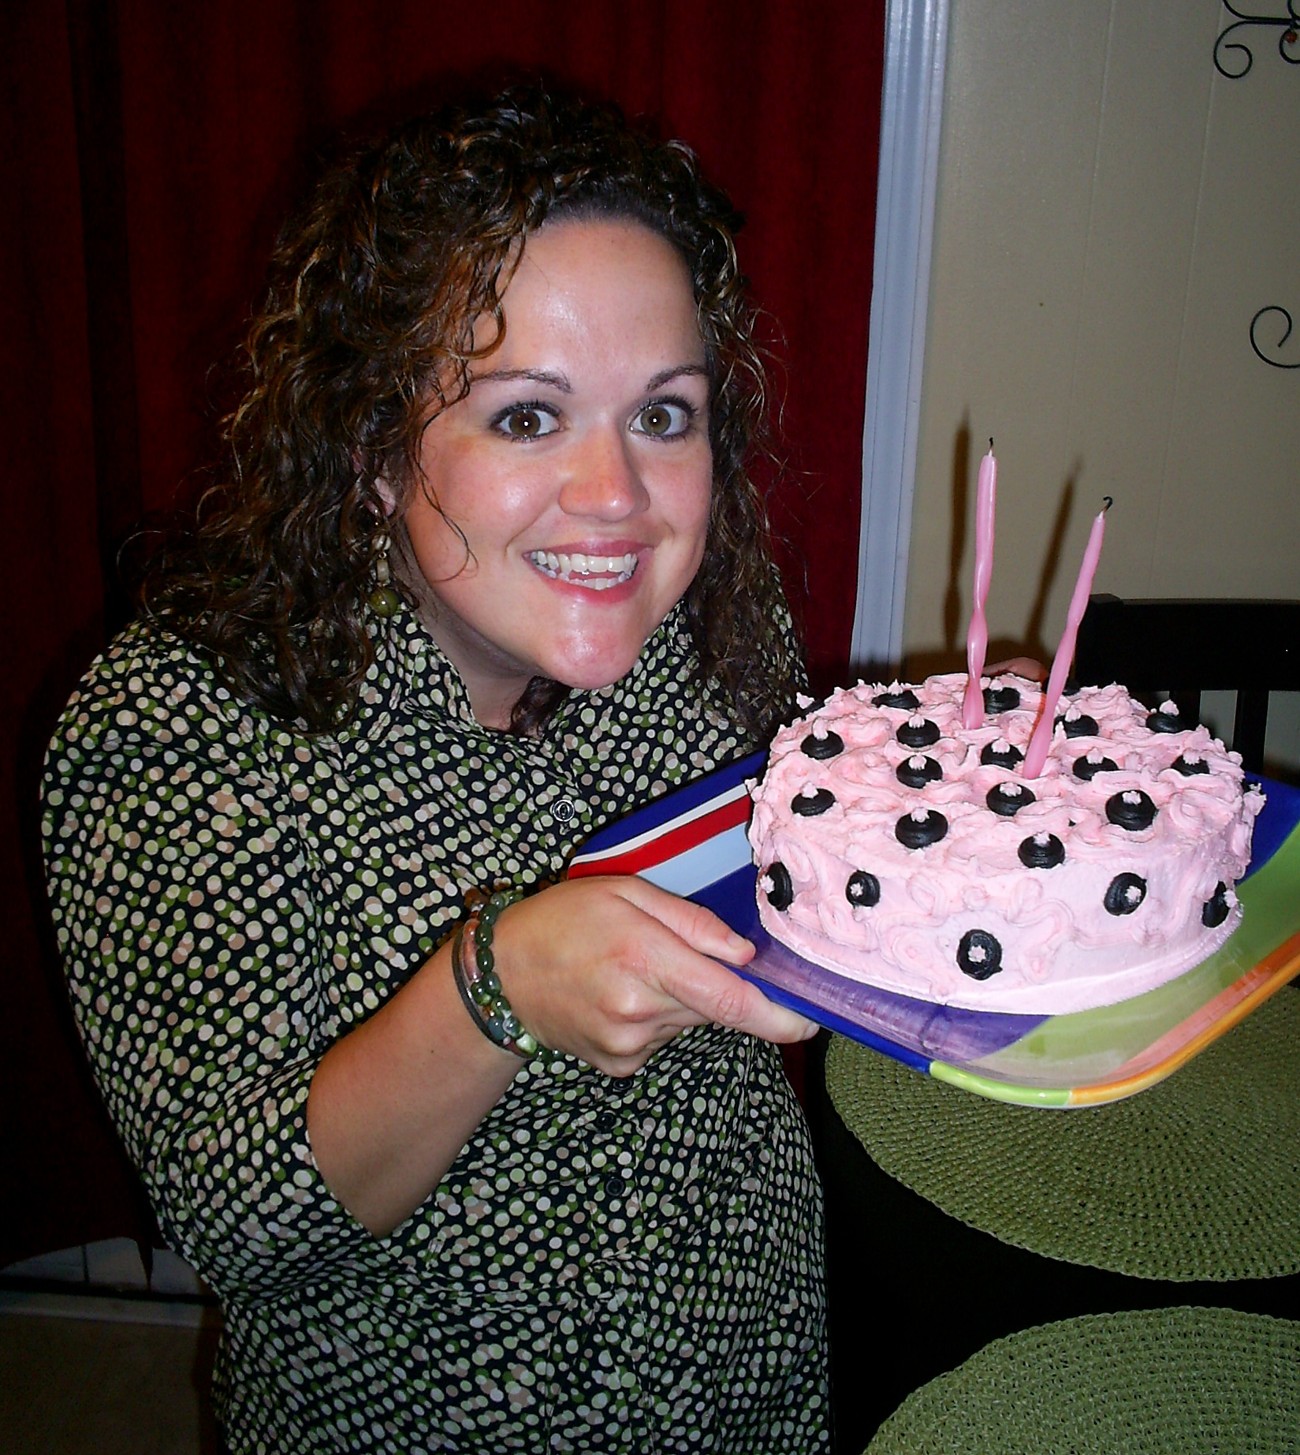 [Happy+Birthday+Cake+at+Lindsey's.jpg]